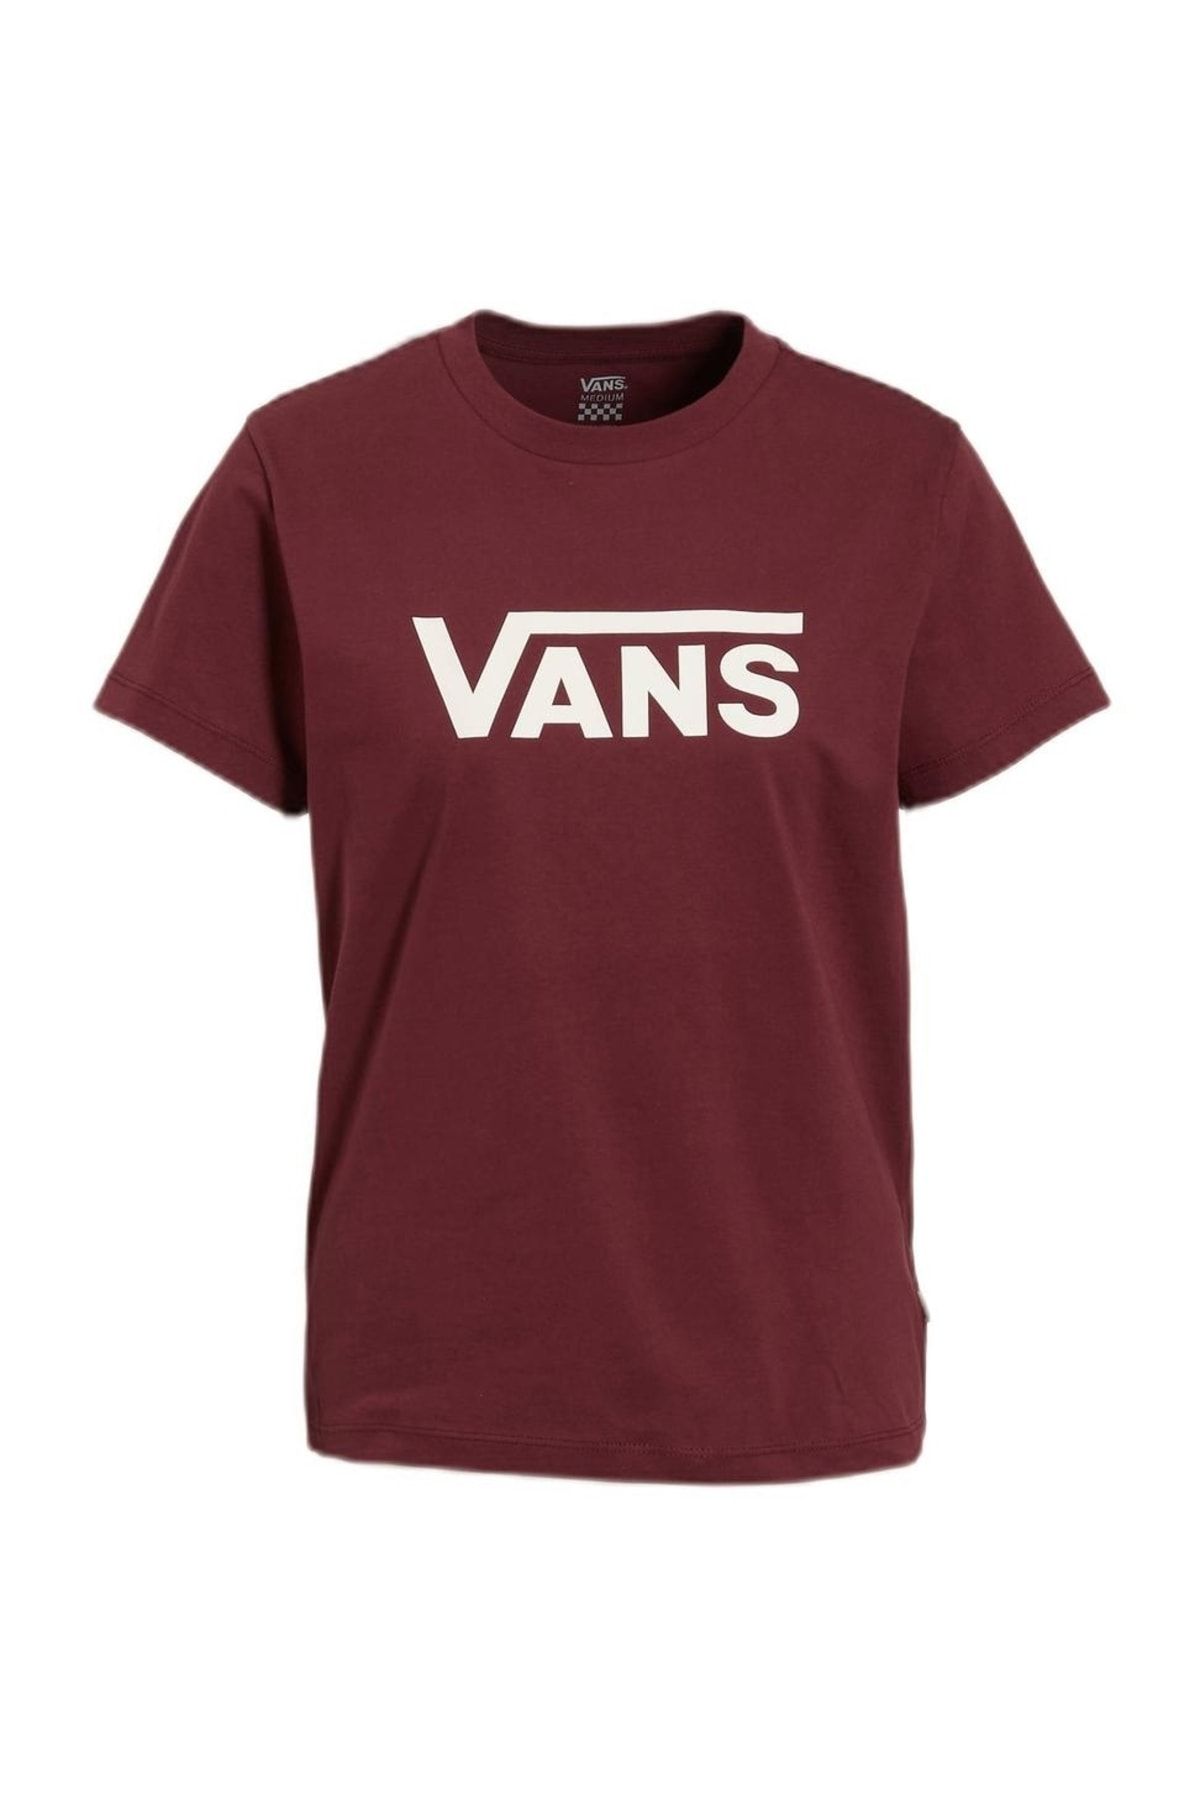 تی شرت قرمز یقه گرد طرح چاپی مدل ساده آستین کوتاه مردانه ونس Vans (برند آمریکا)